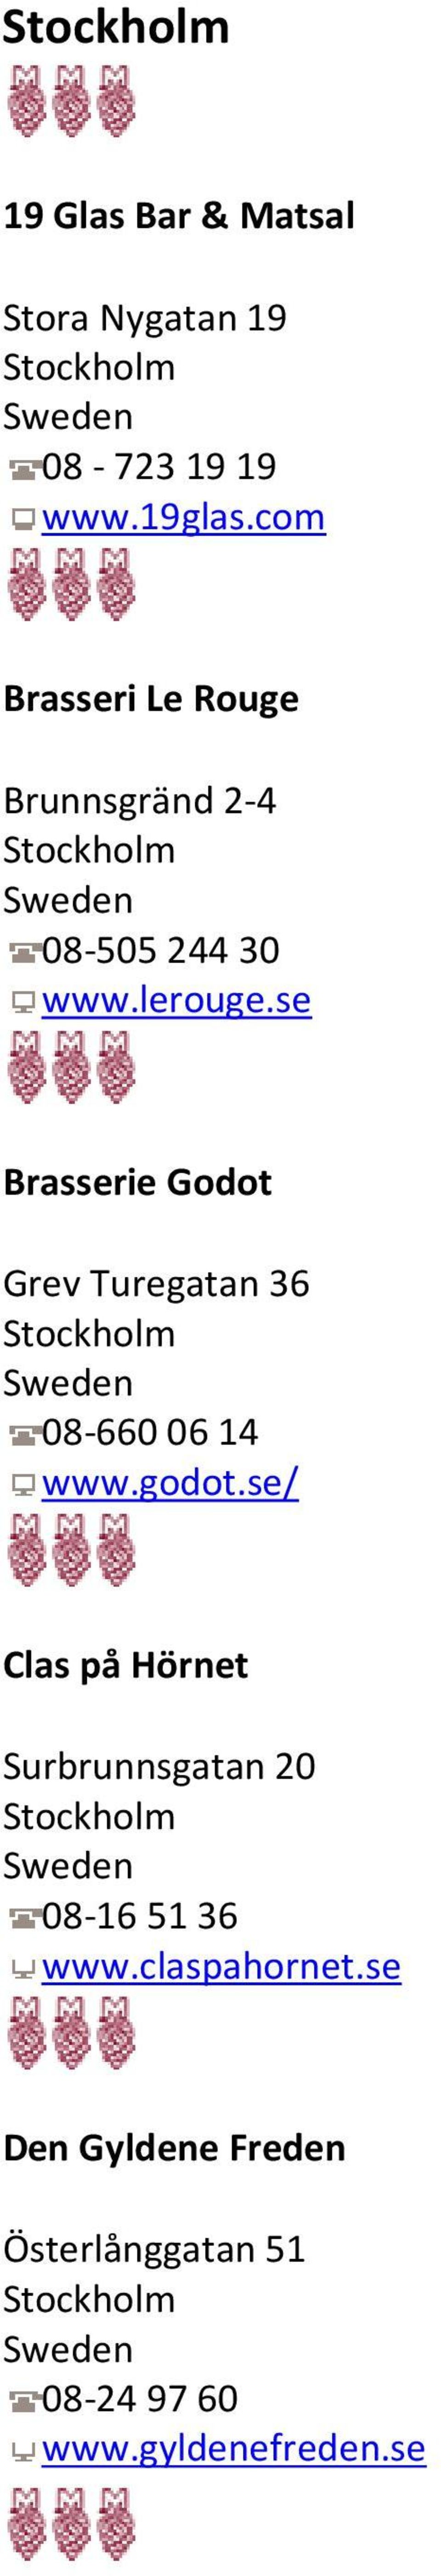 se Brasserie Godot Grev Turegatan 36 08-660 06 14 www.godot.